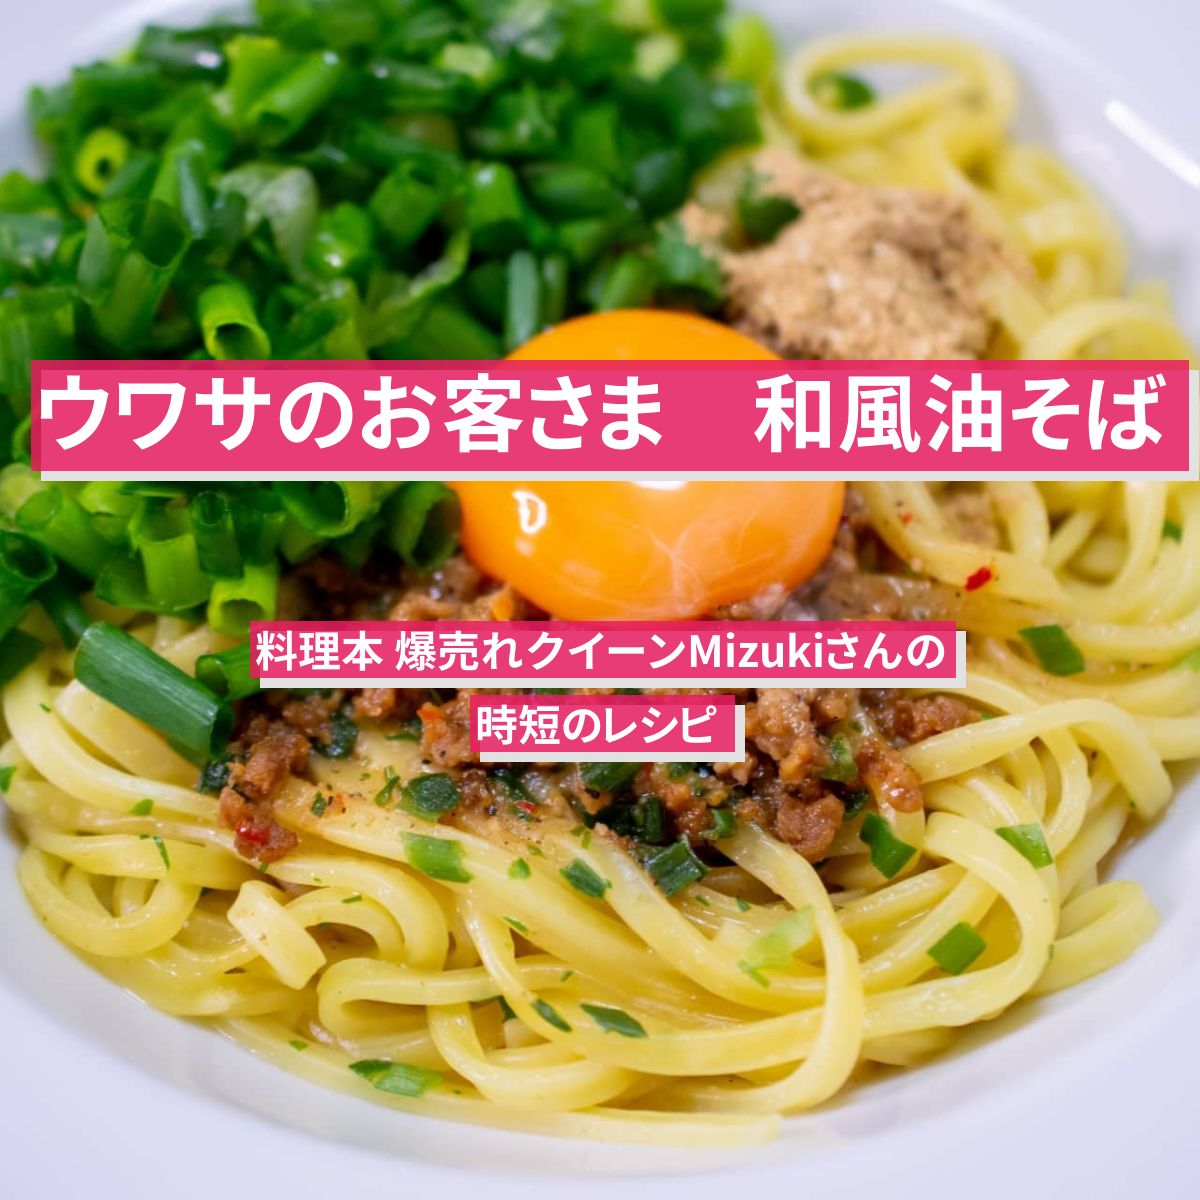 【ウワサのお客さま】『和風油そば』料理本 爆売れクイーンMizukiさんの時短のレシピ